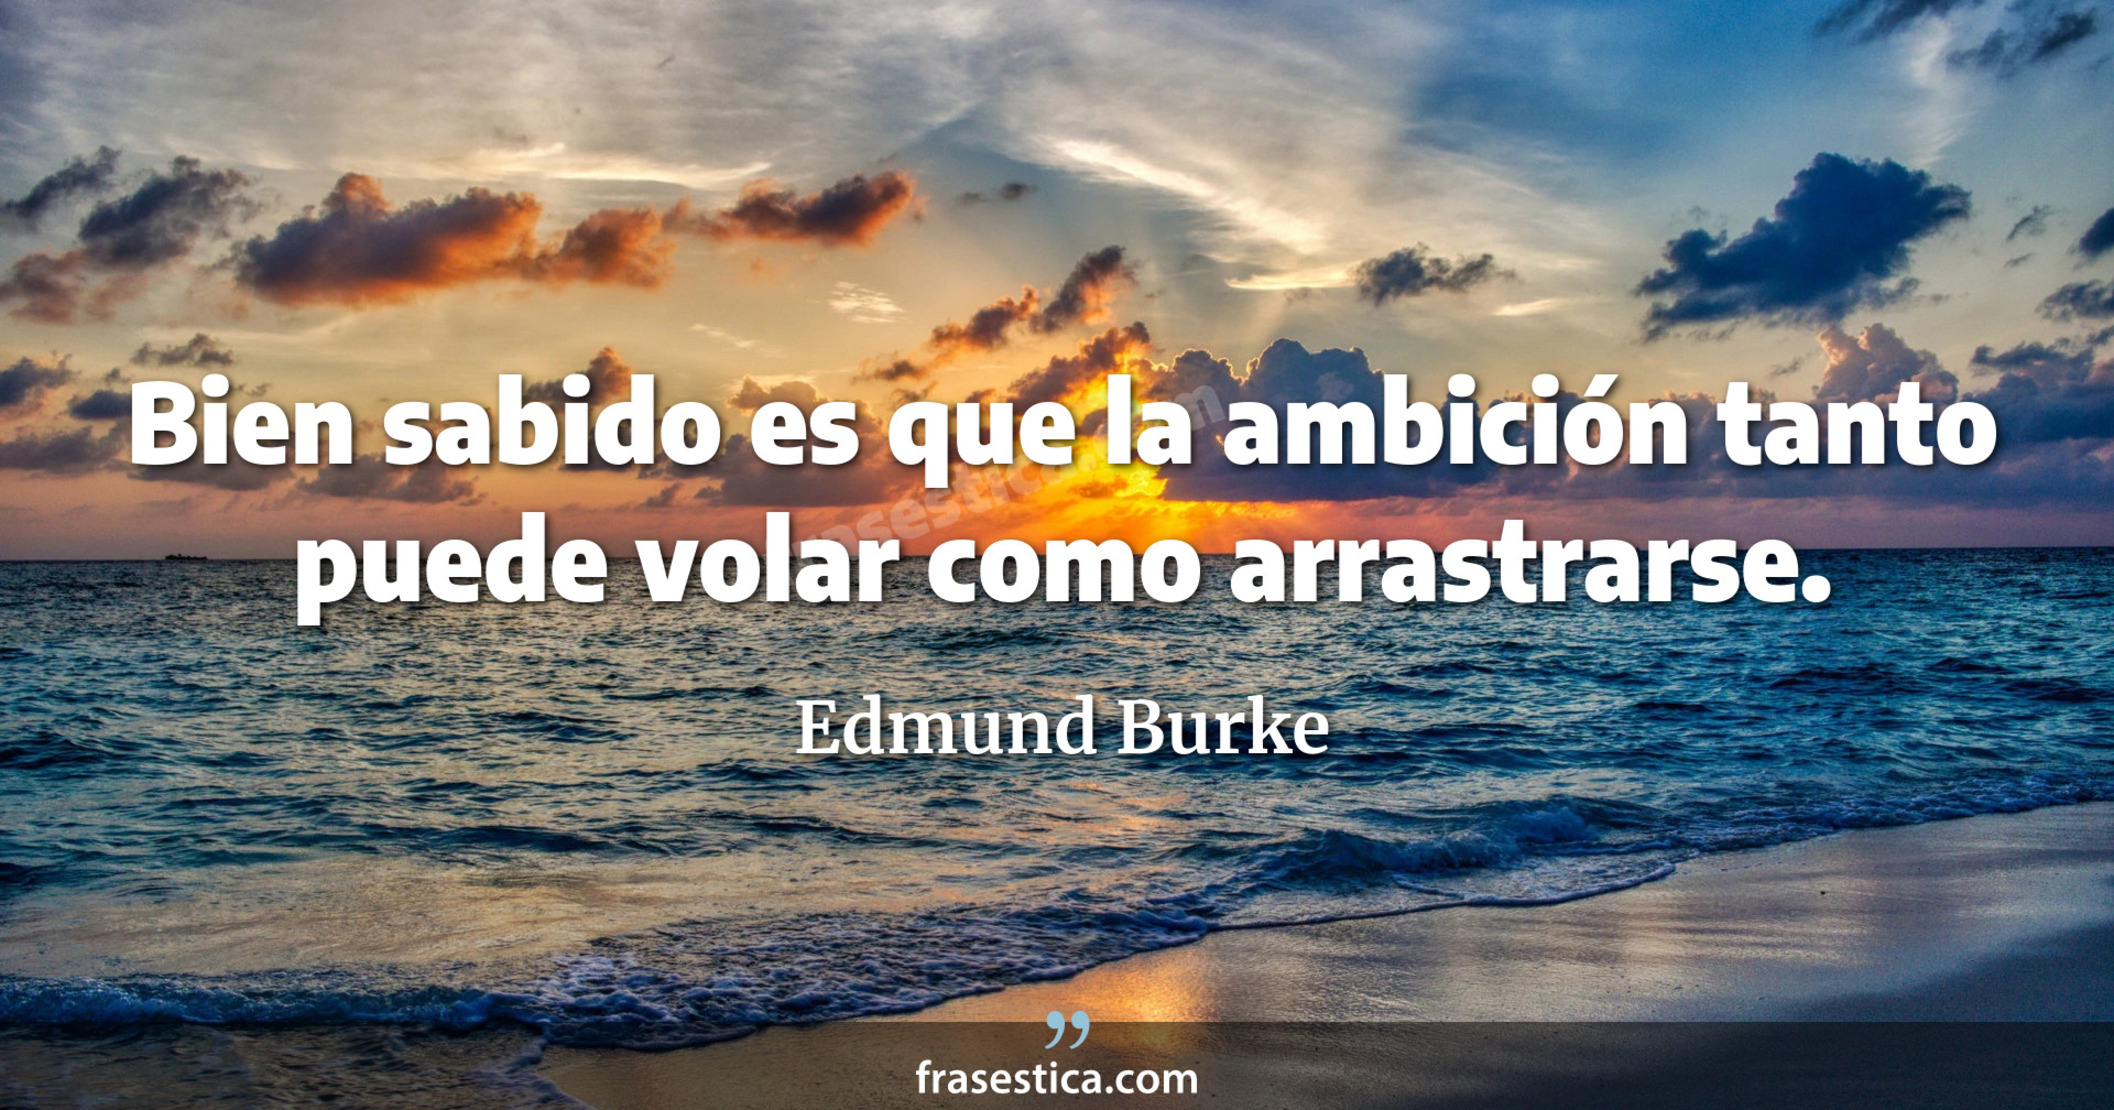 Bien sabido es que la ambición tanto puede volar como arrastrarse. - Edmund Burke